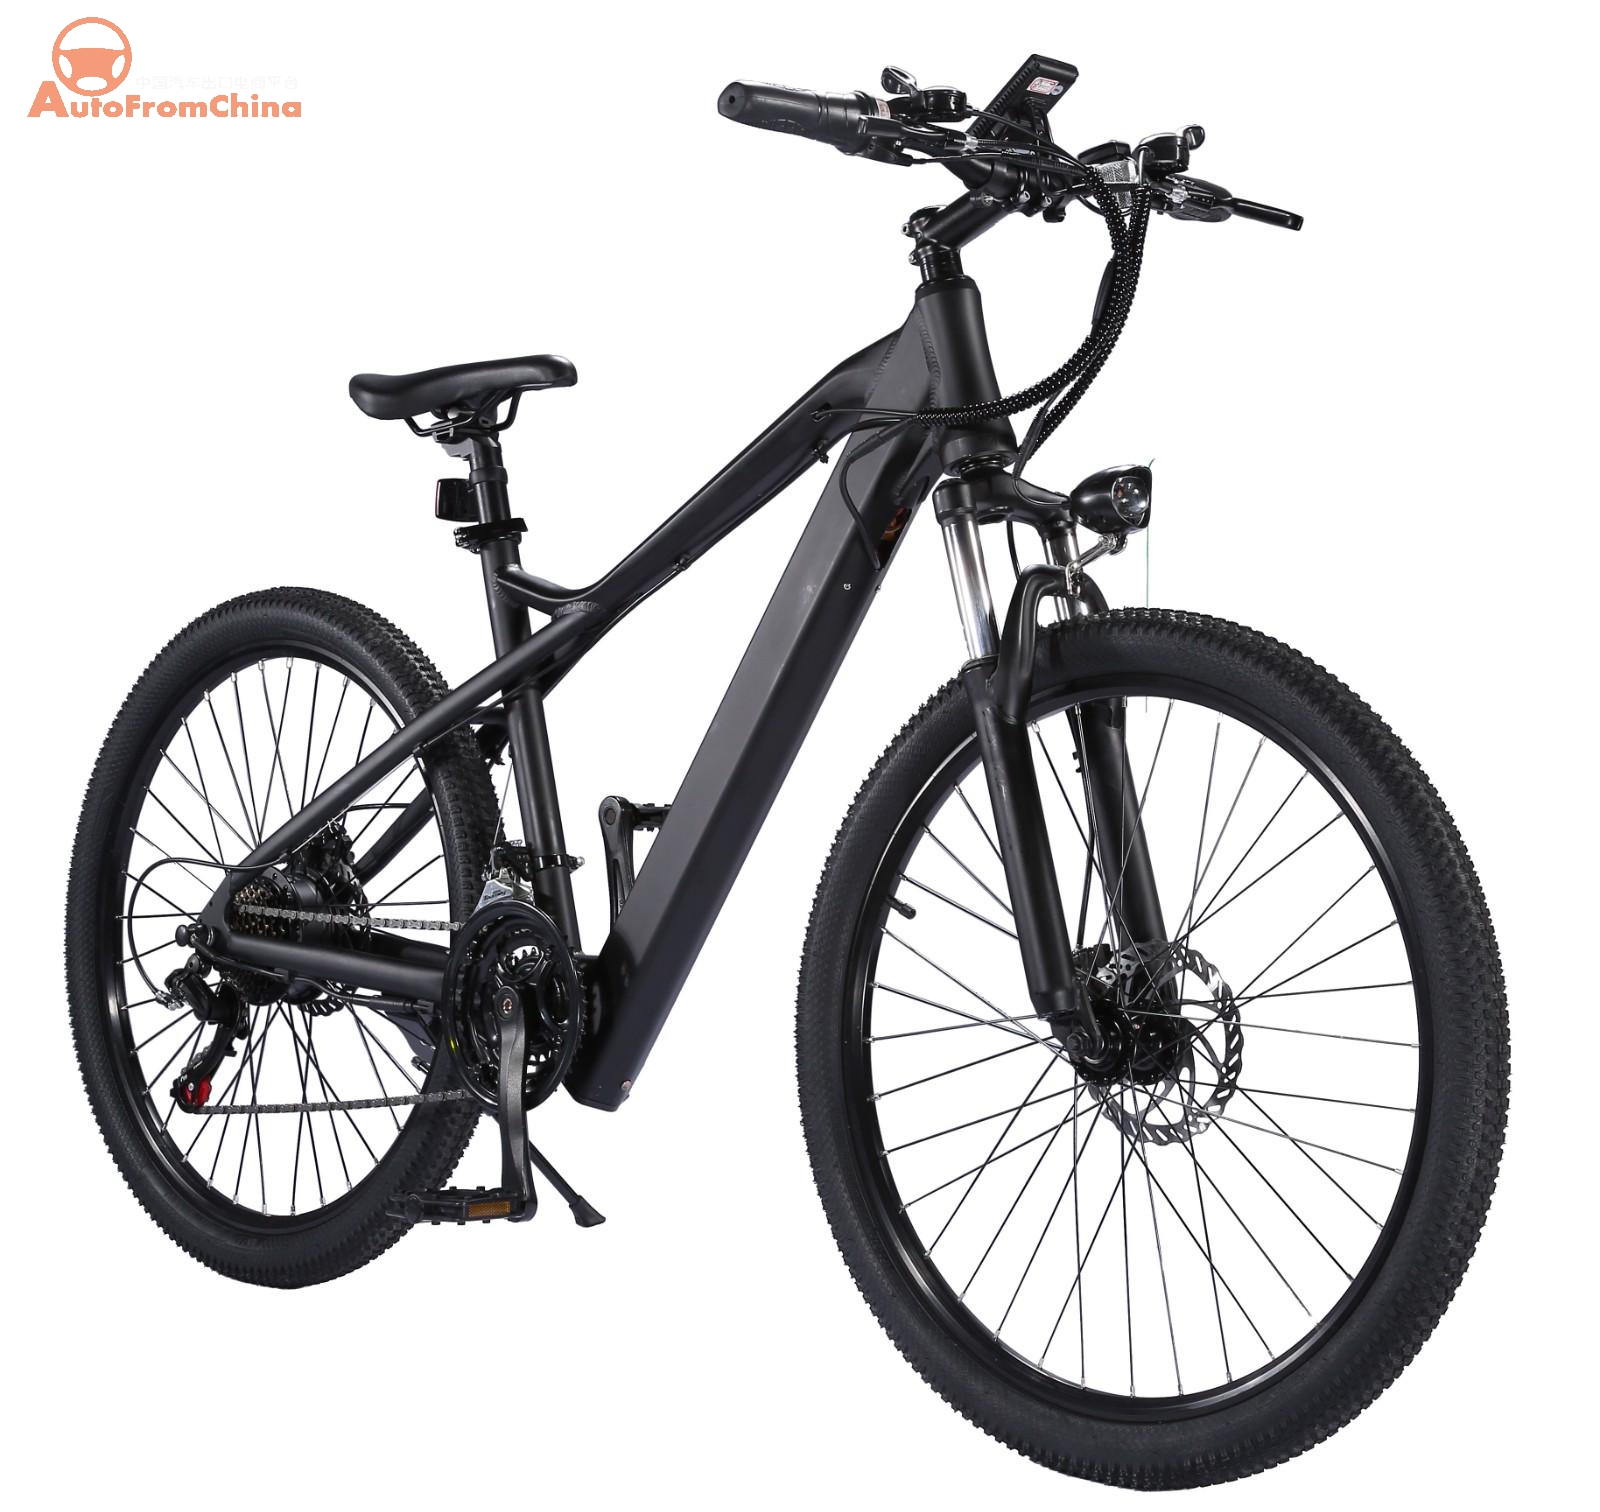 EBike027 Electric Bike Factory in China - Best Adult Electric Bicycles - EBikes China - Electric Bikes for Aadults